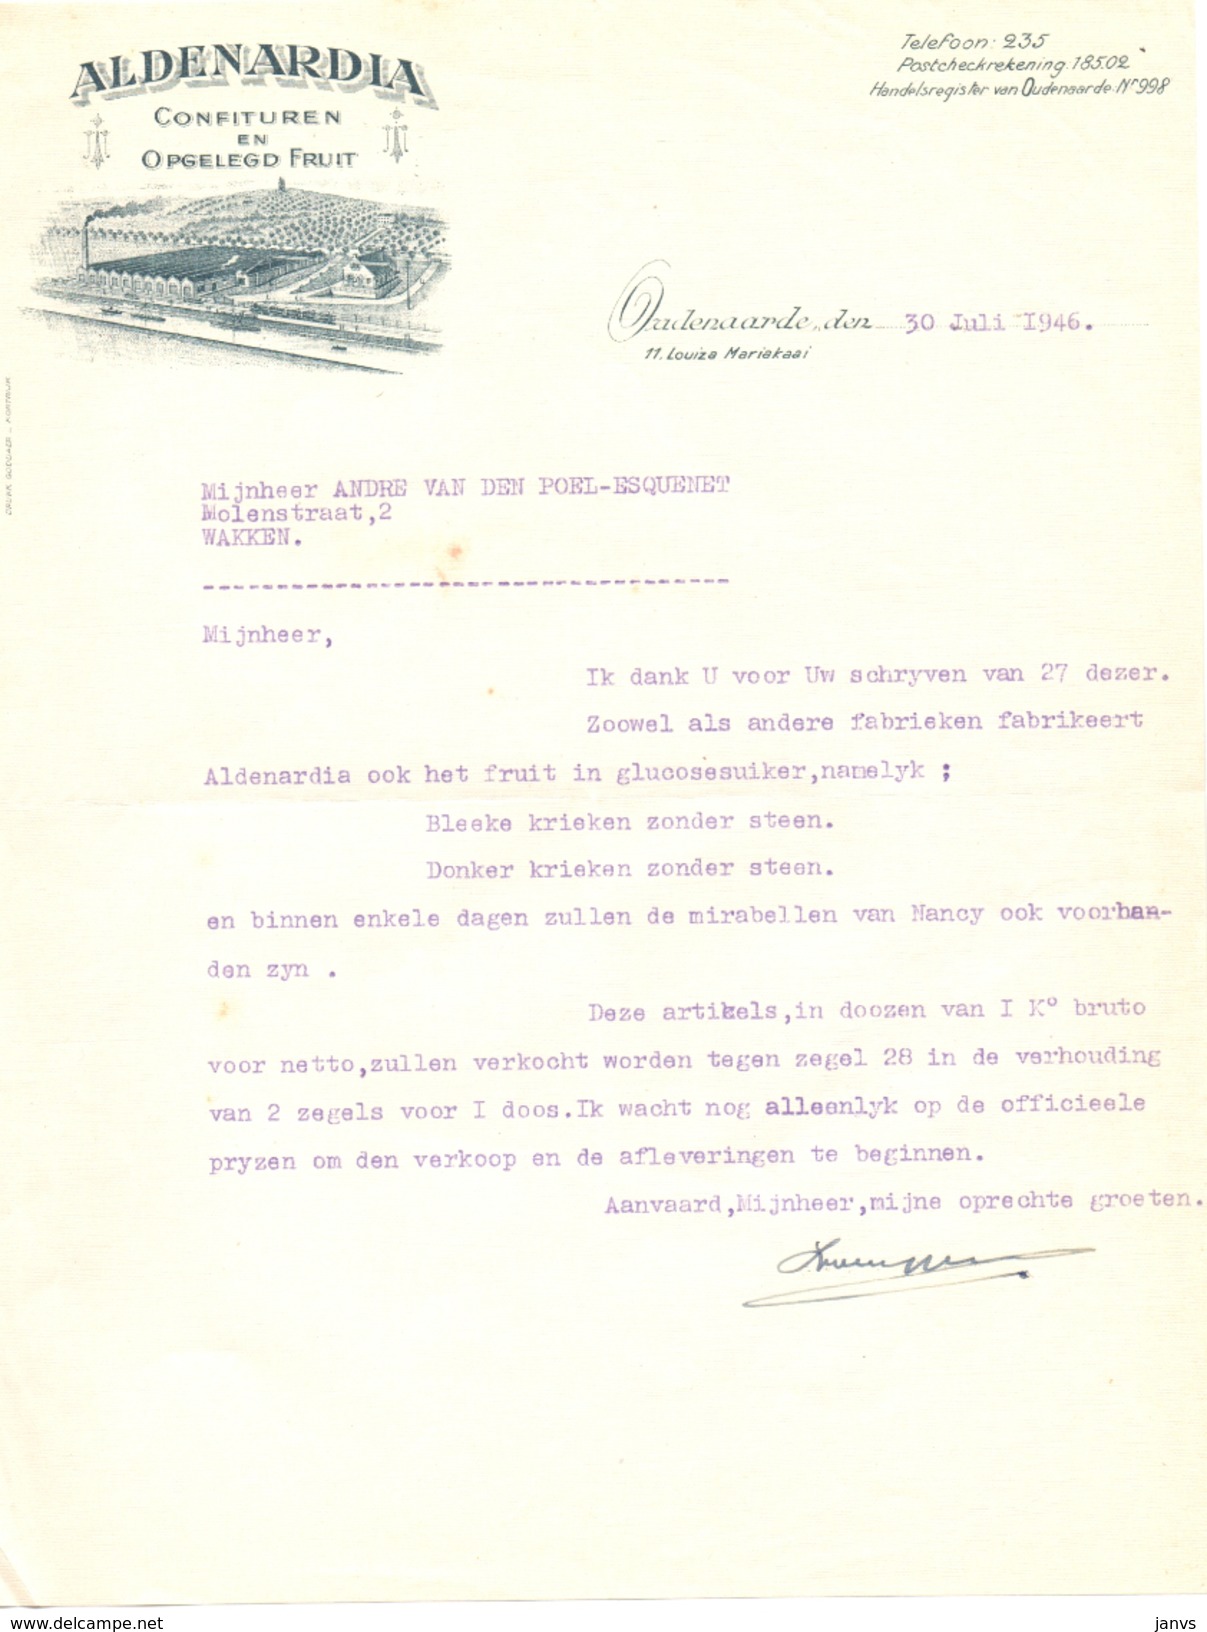 Brief Lettre - Aldenardia Confituren En Opgelegd Fruit - Oudenaarde 1946 - Voor Andre Van Den Poel - Wakken - Petits Métiers